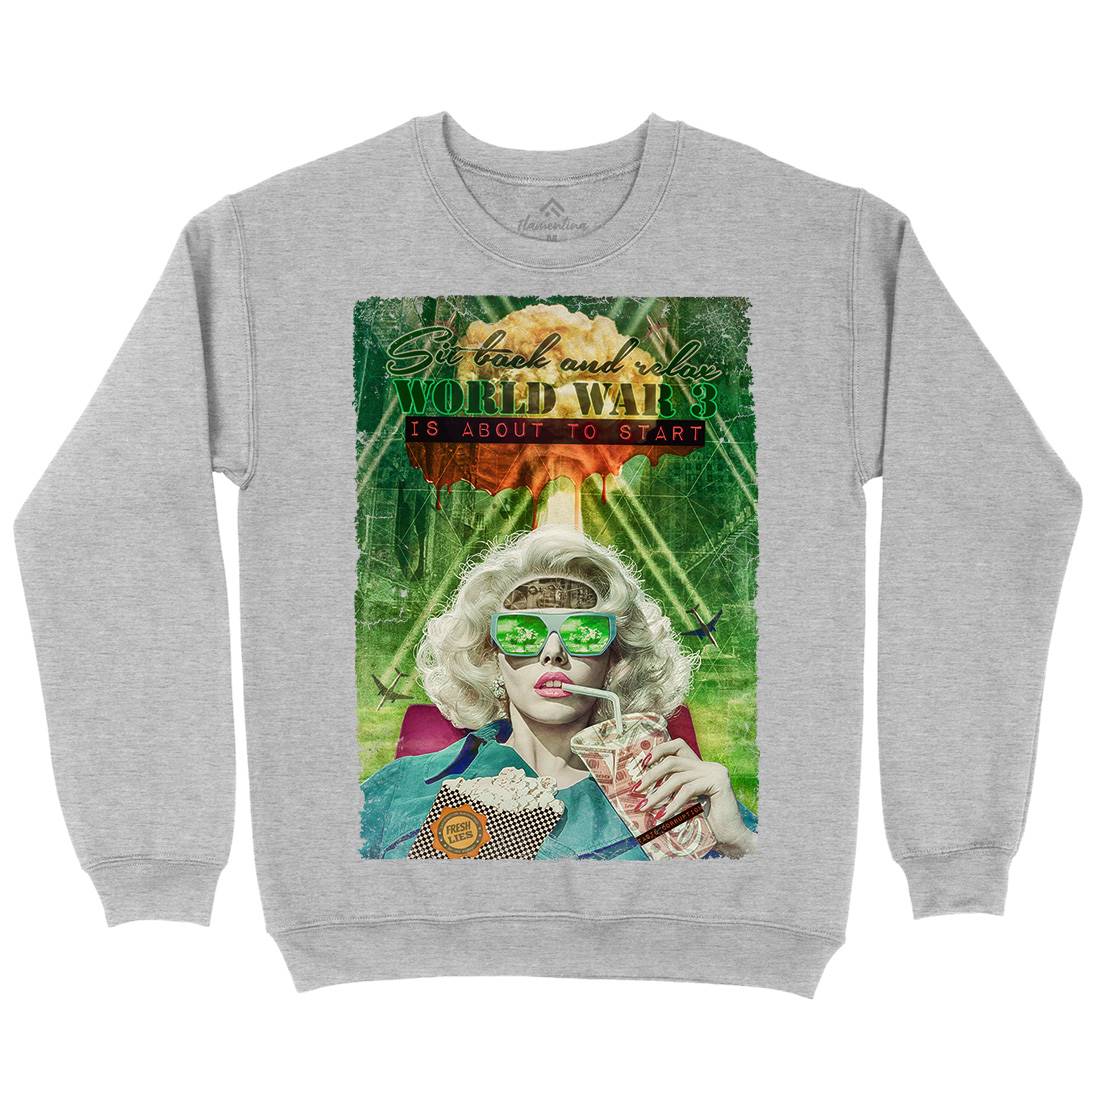 Ww3 Kids Crew Neck Sweatshirt Illuminati A944